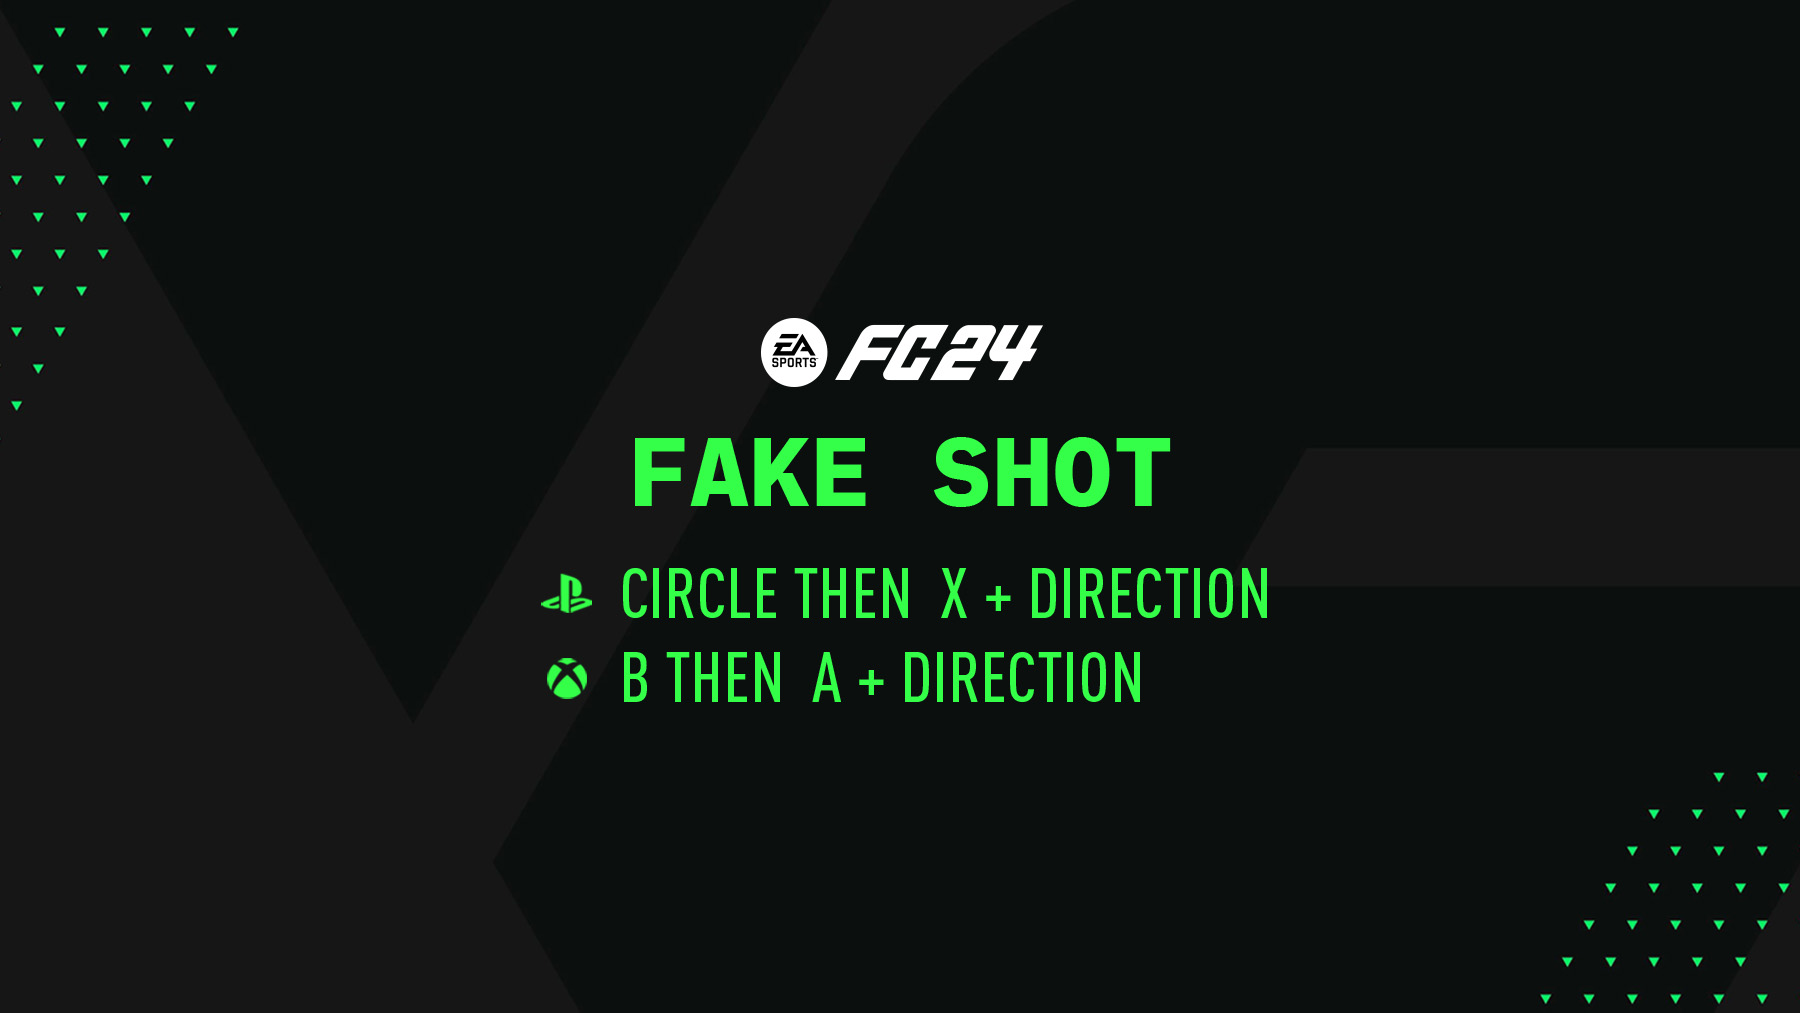 FC 24 Fake Shot